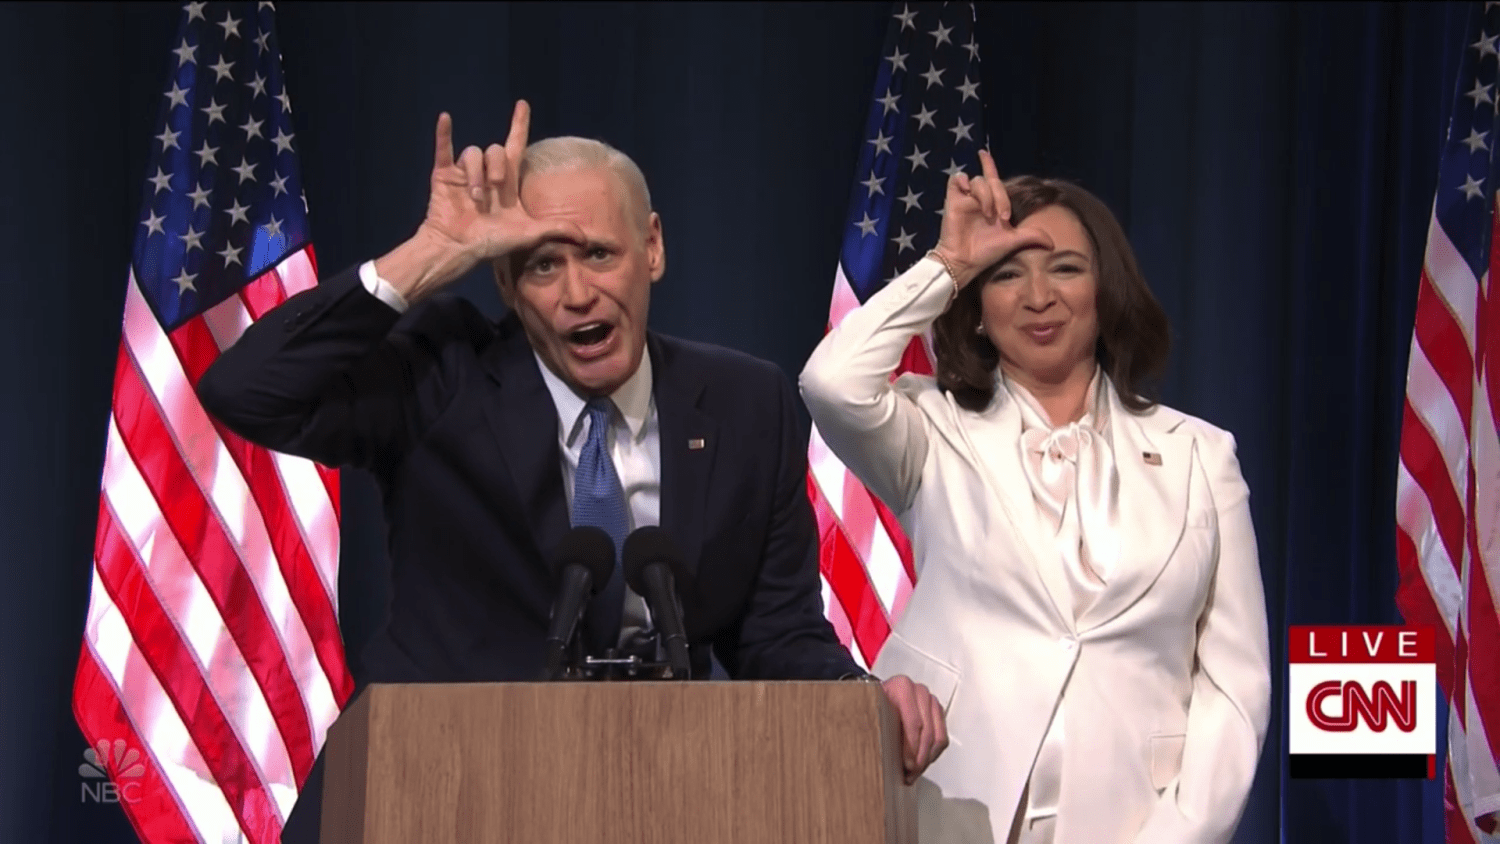 Saturday Night Live' celebrates Biden win, calls Trump 'loser'